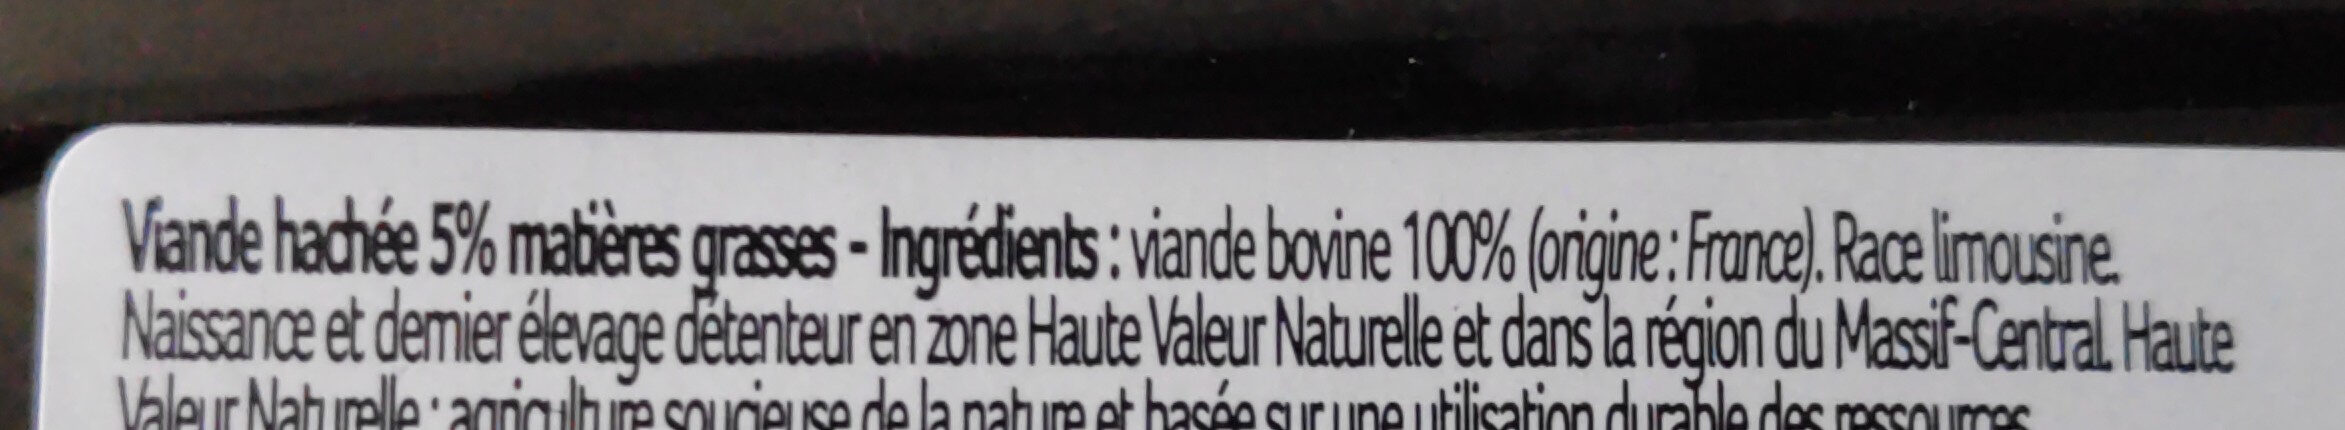 Viande hachée - Ingredients - fr